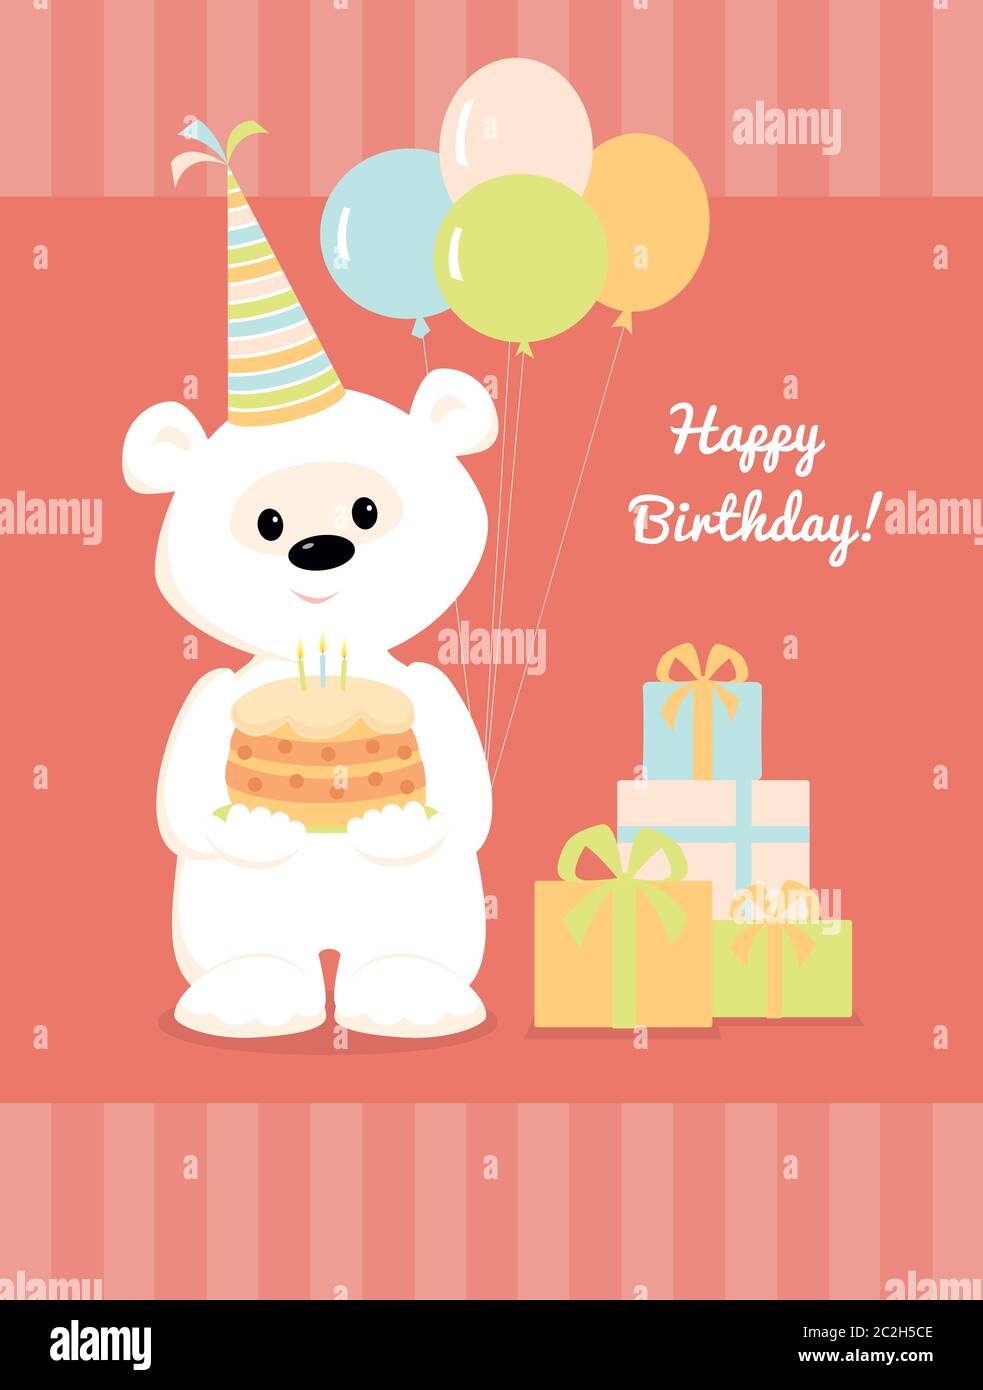 Illustrazione vettoriale di un carino orso teddy bianco cartoon con una torta, palloncini e regali. Design per biglietto di auguri con testo buon compleanno. Colore pastello Illustrazione Vettoriale